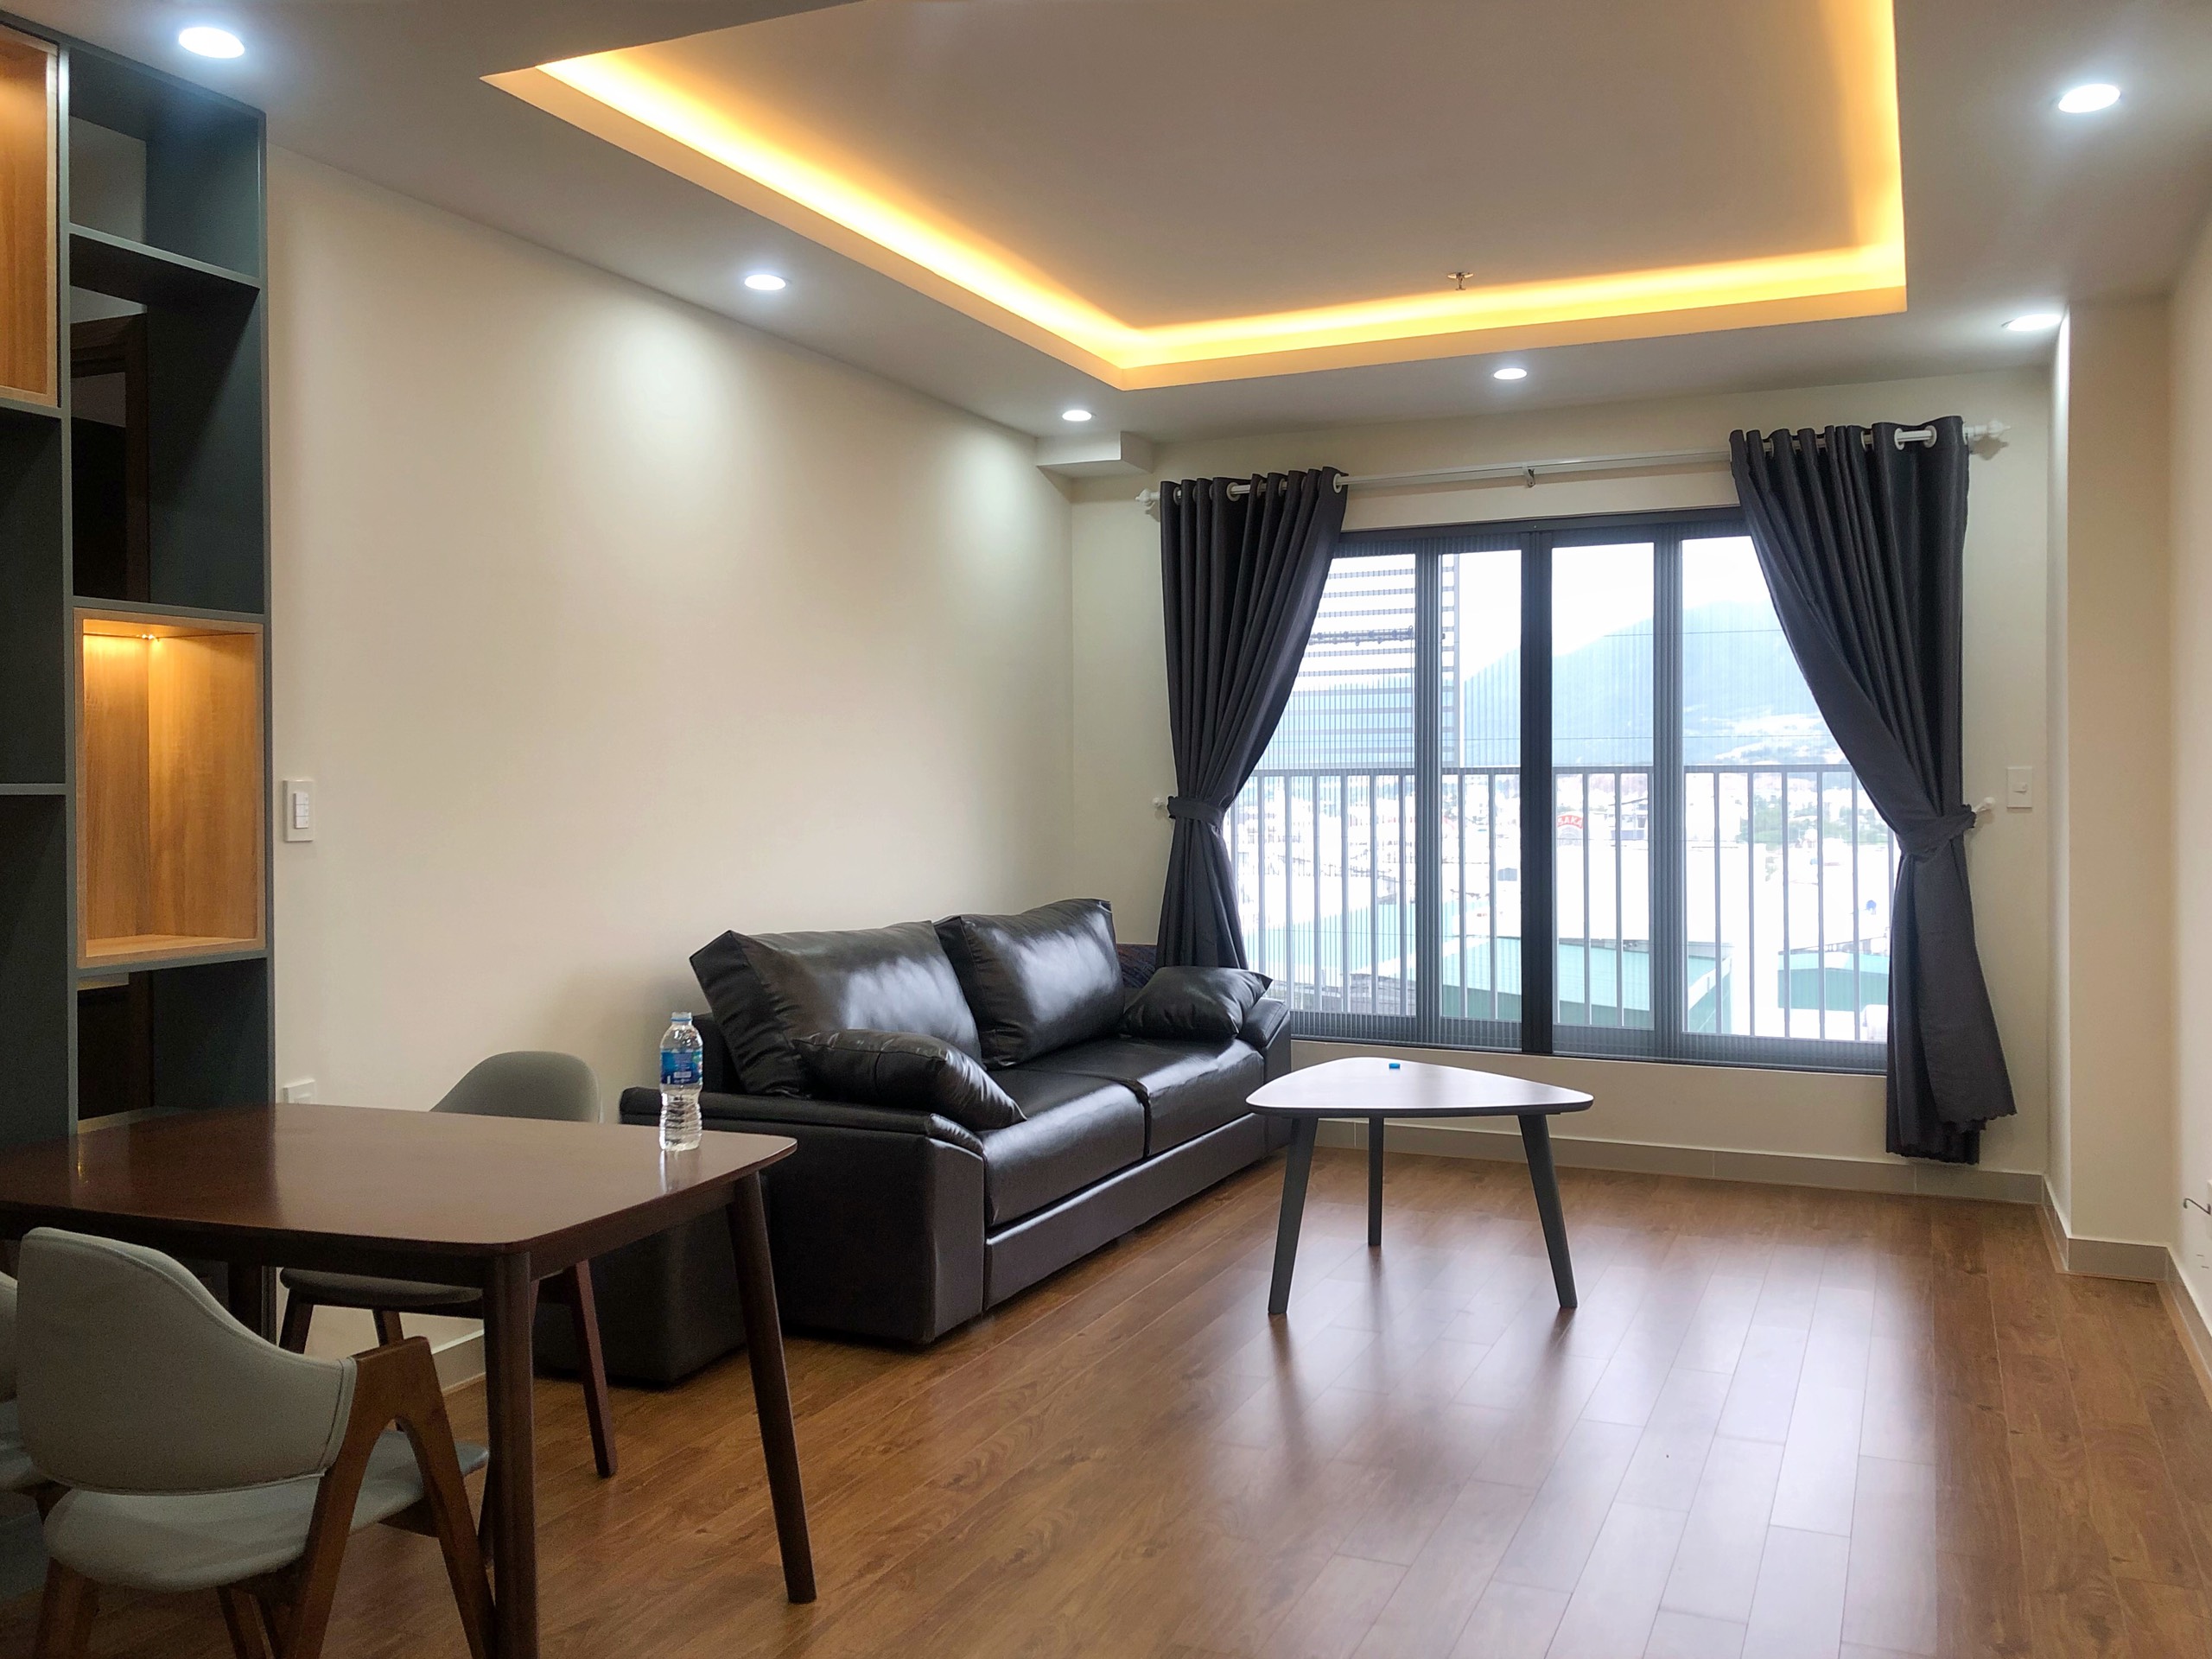 Bán căn hộ đẹp 1pn chung cư CT4 VCN Phước Hải, đầy đủ nội thất đẹp sang trọng, hiện đại 1